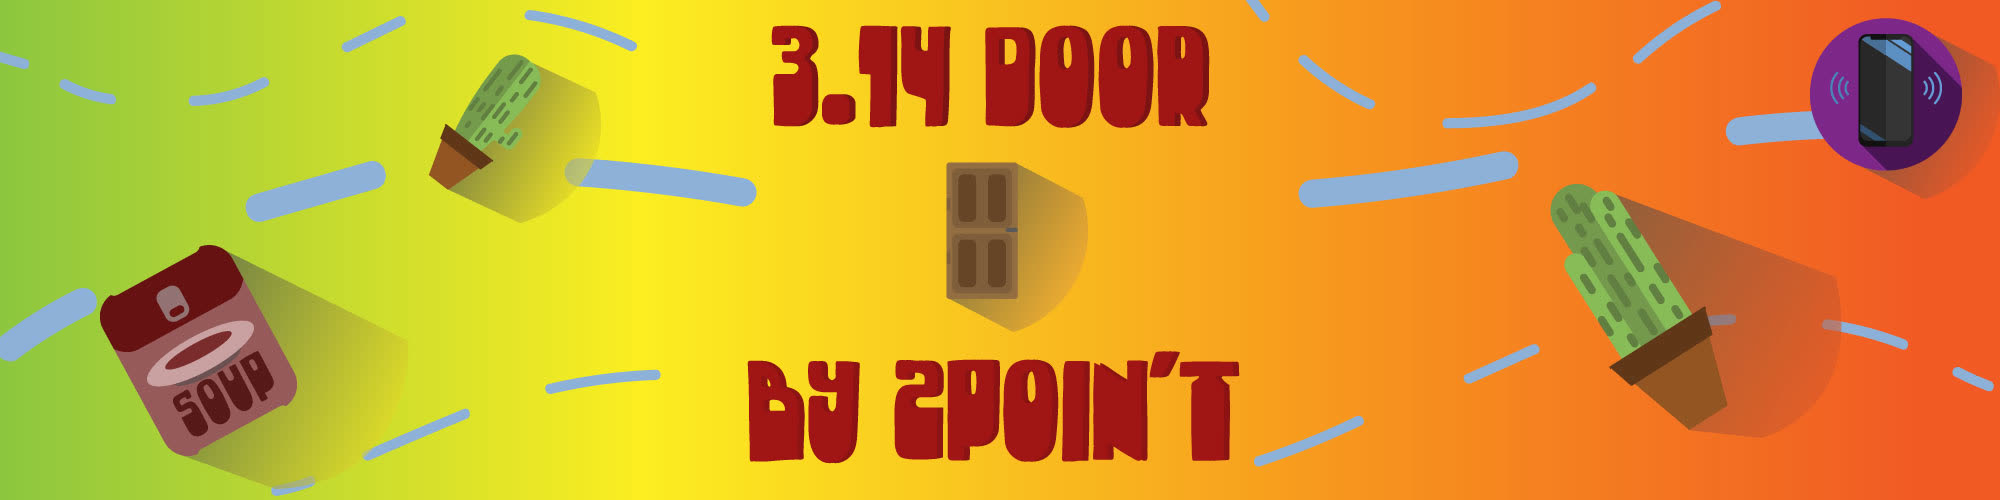 3.14 Door